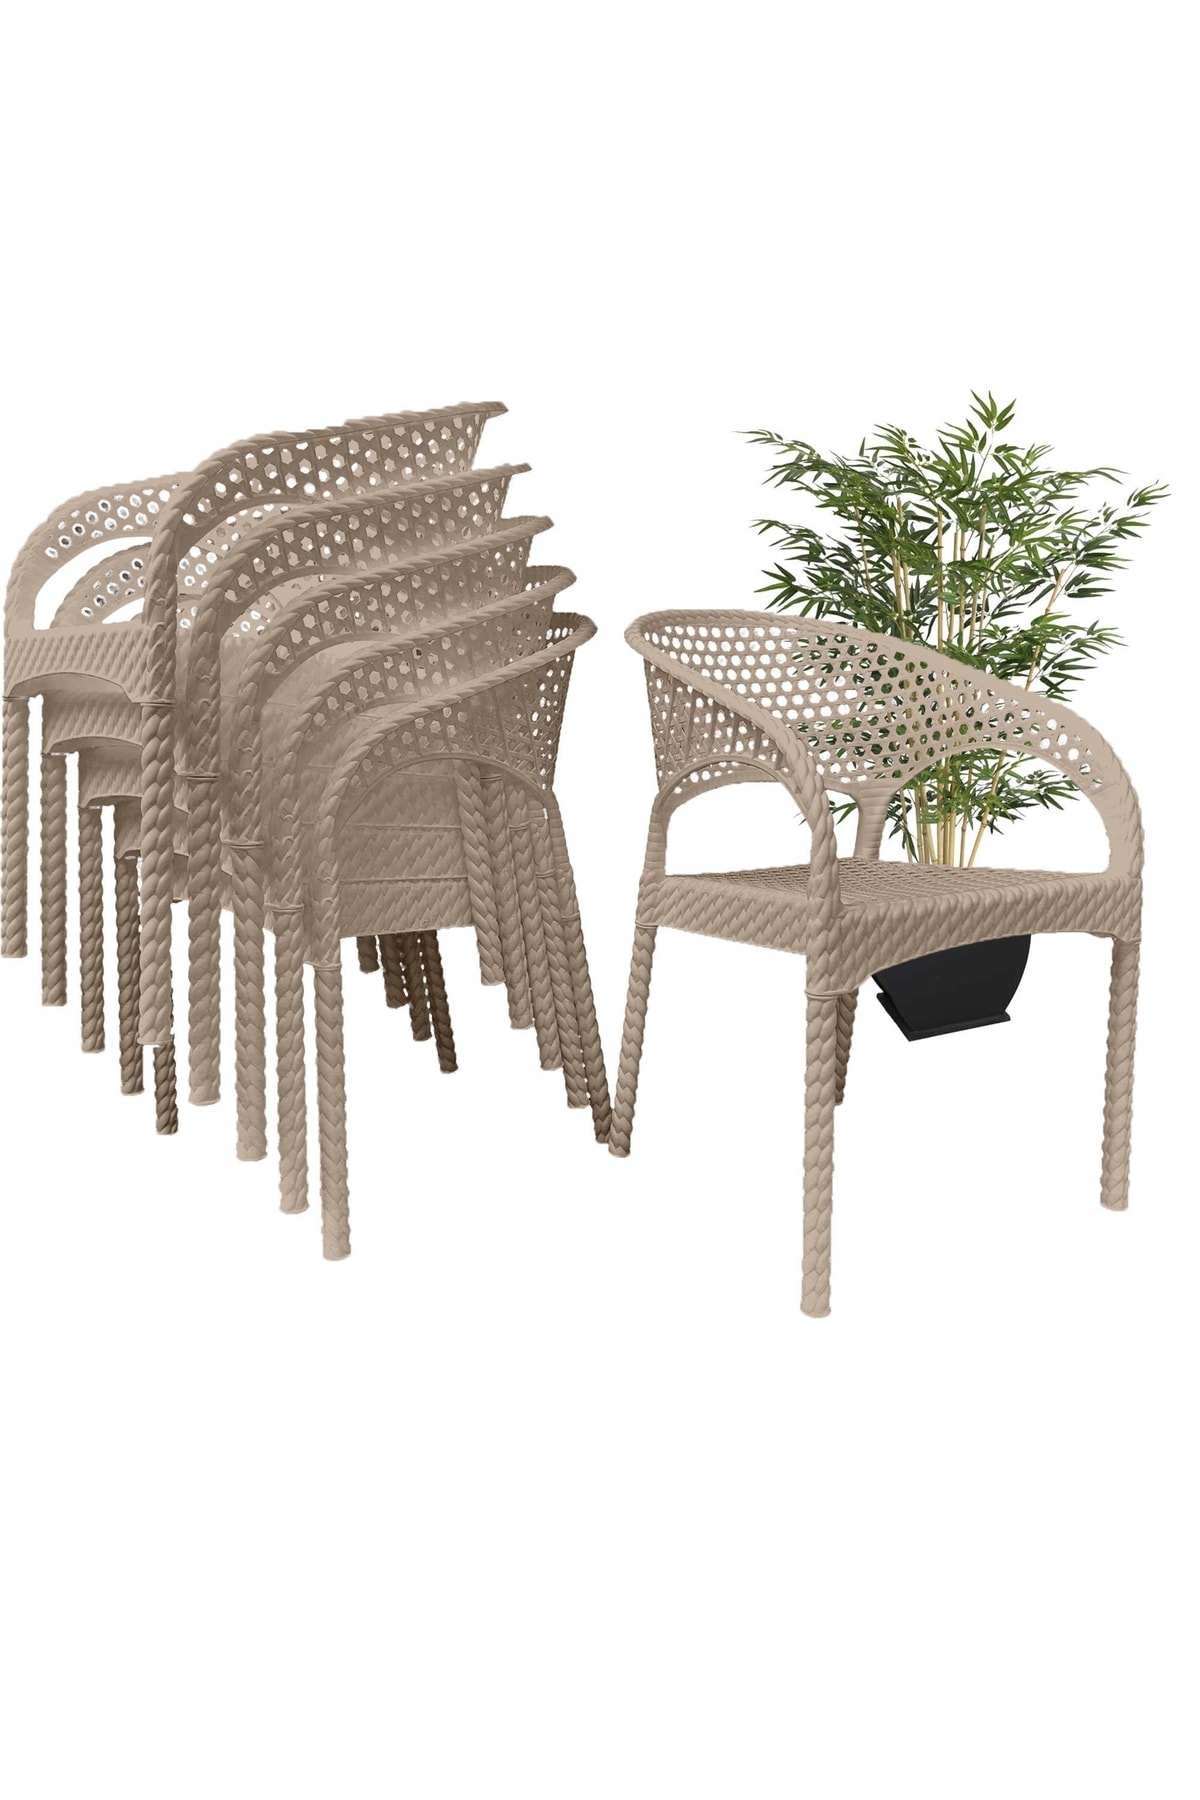 RomanoSet Plastik Romanoset Regnum Örgü Bahçe Ve Balkon Sandalyesi 4 Lü Set